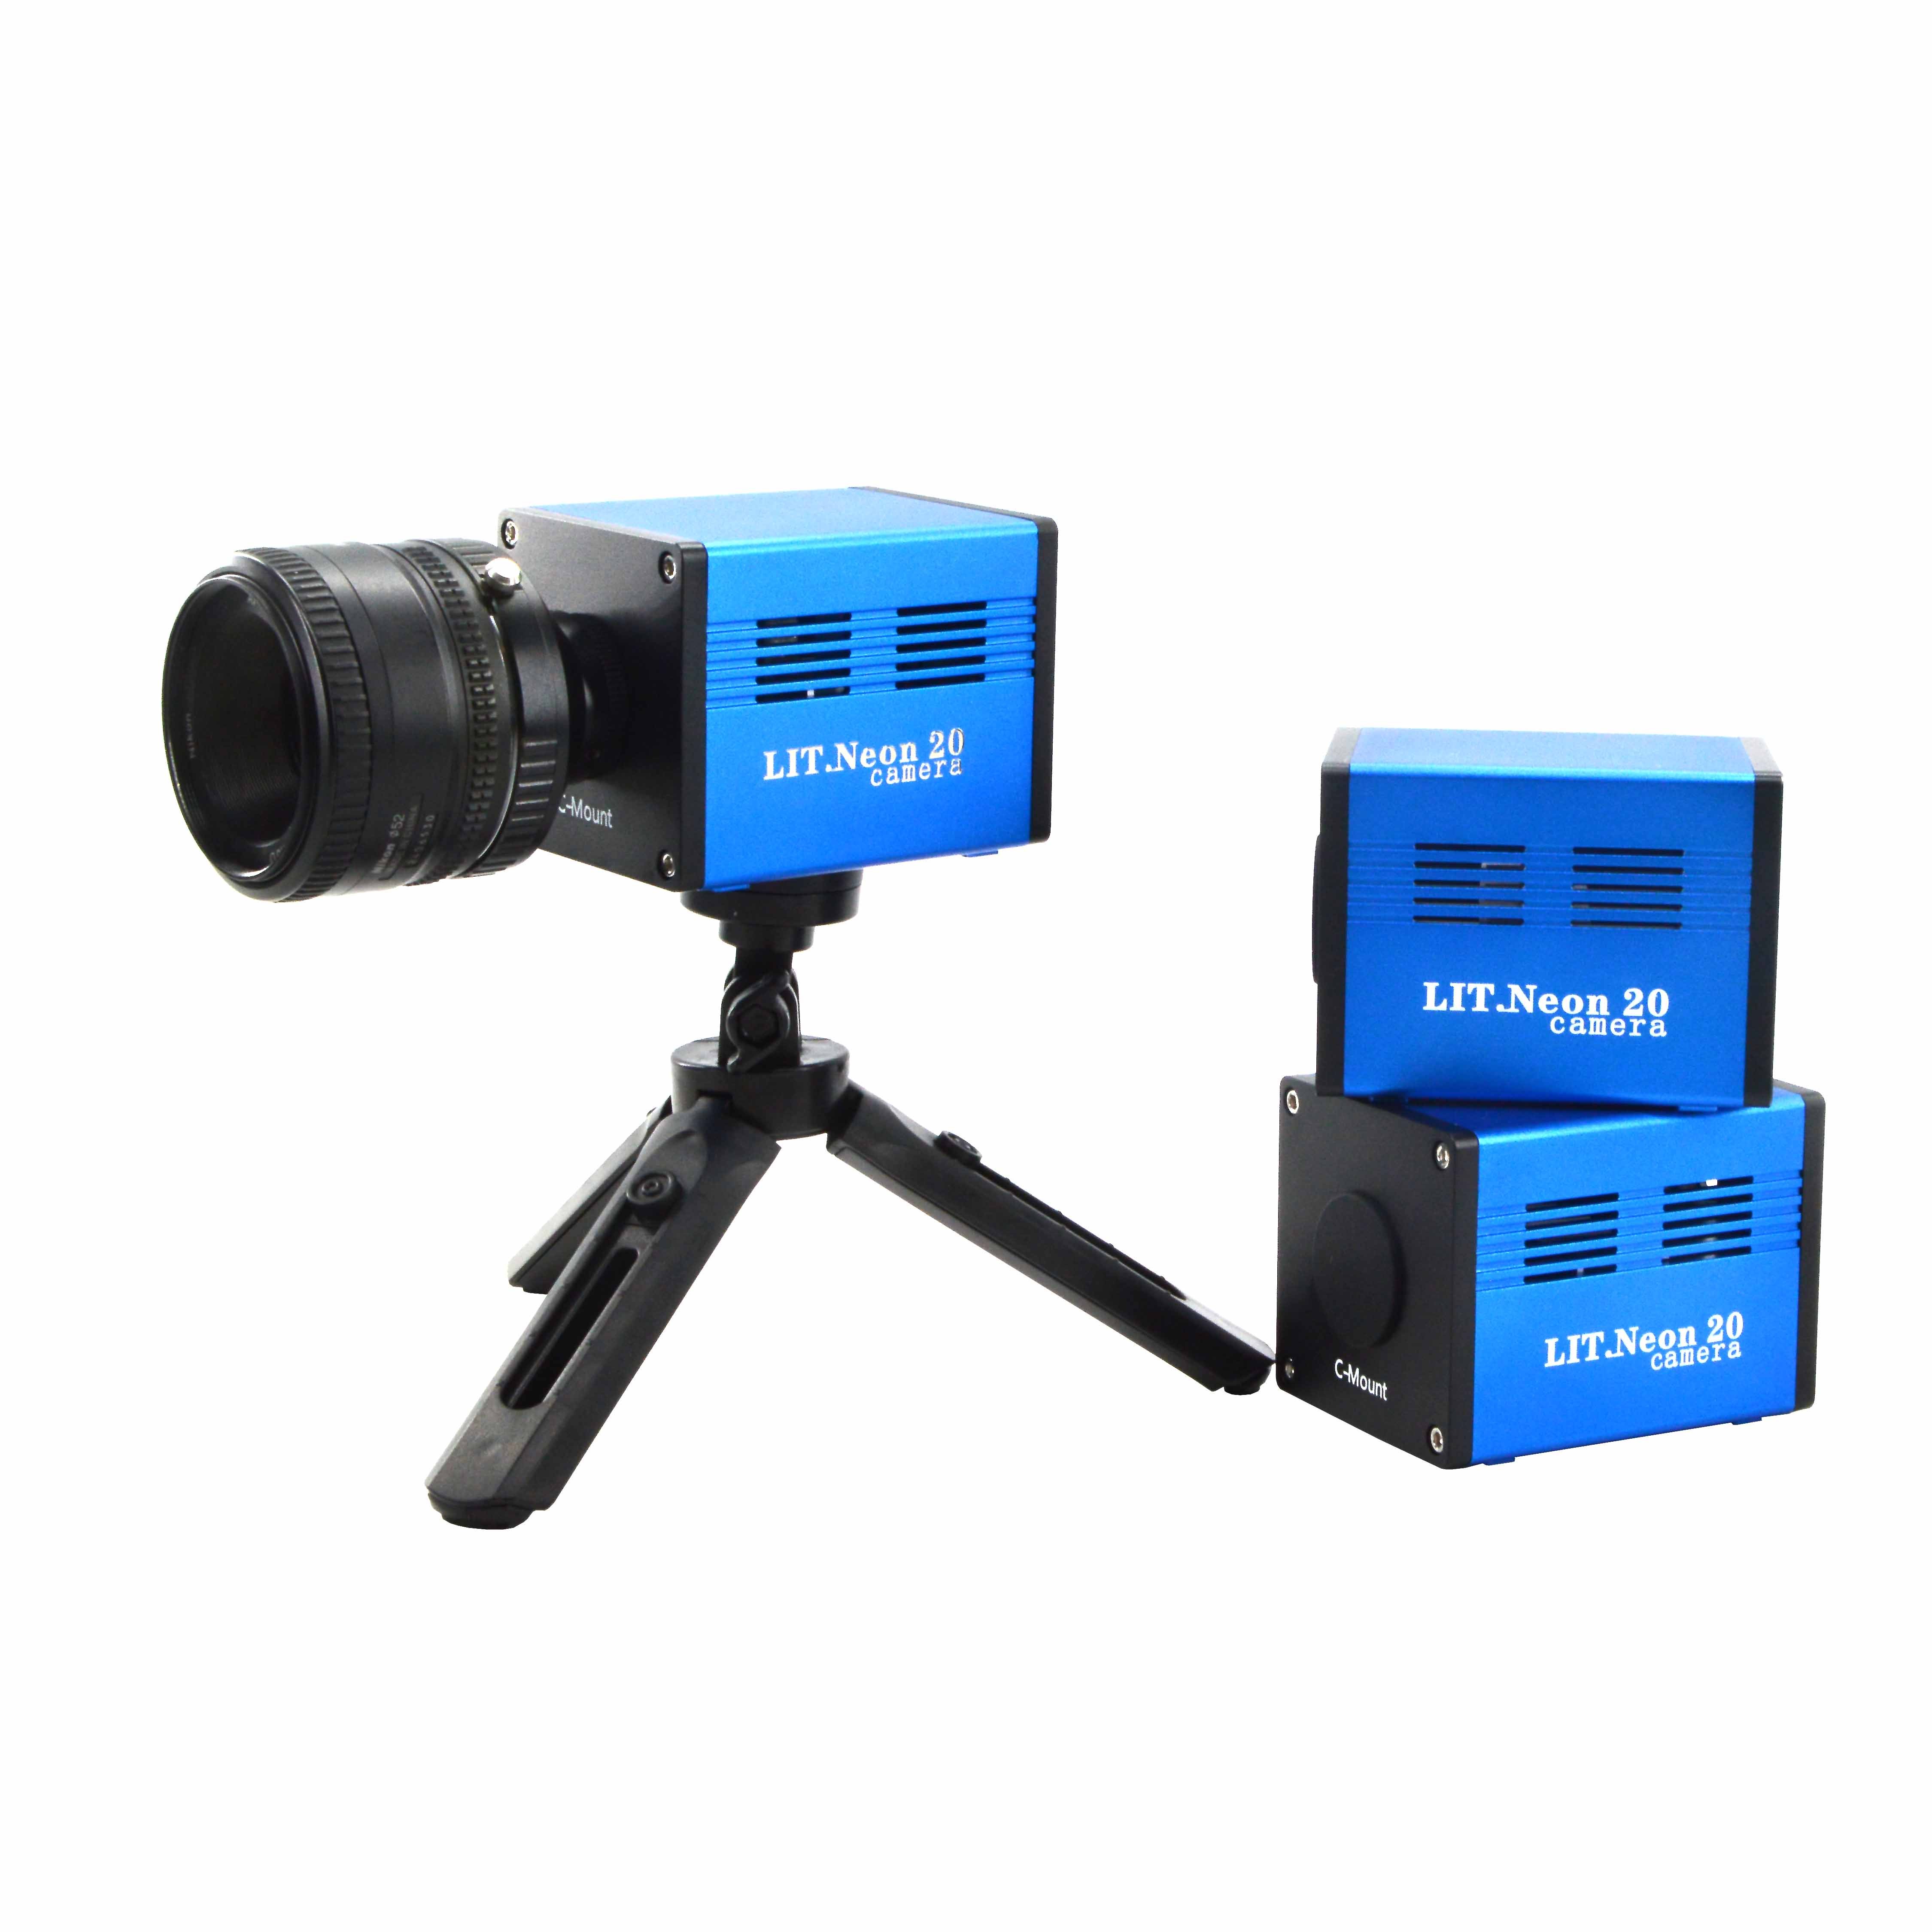 显微镜相机 LIT.Neon20